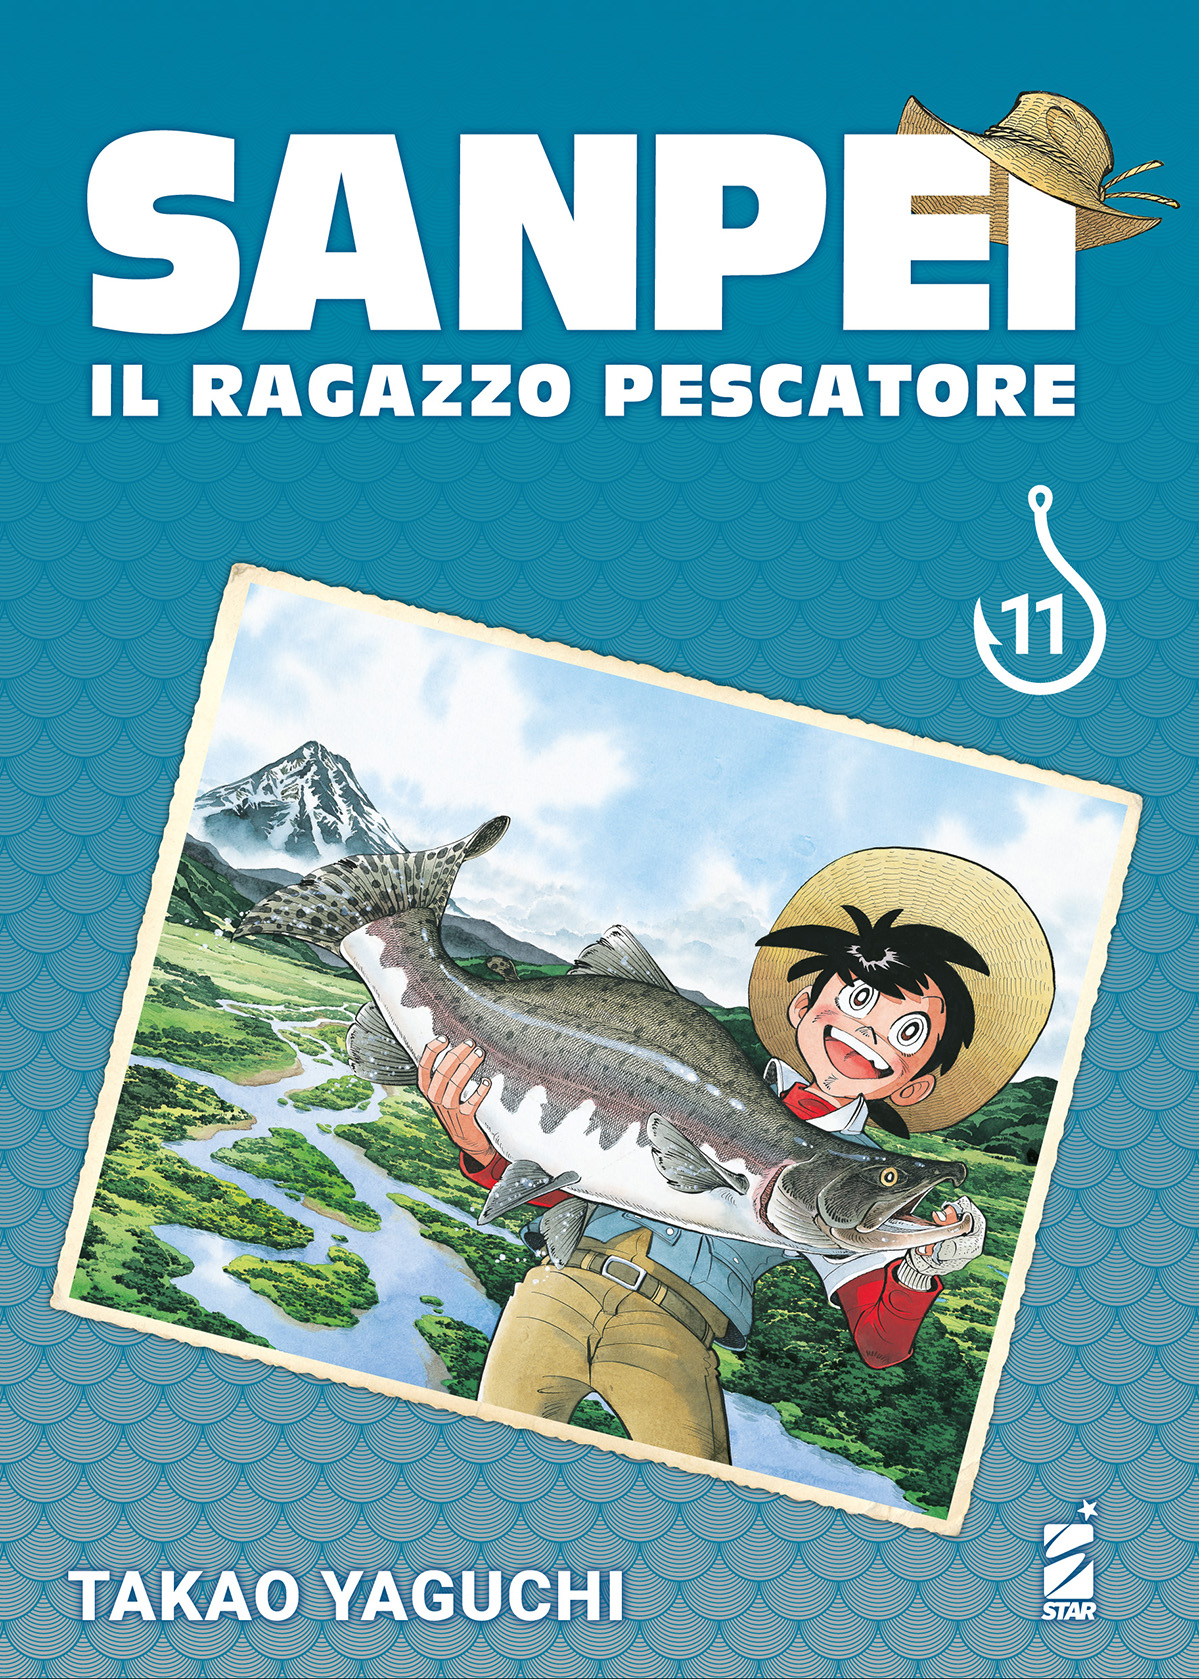 SANPEI IL RAGAZZO PESCATORE TRIBUTE EDITION #011